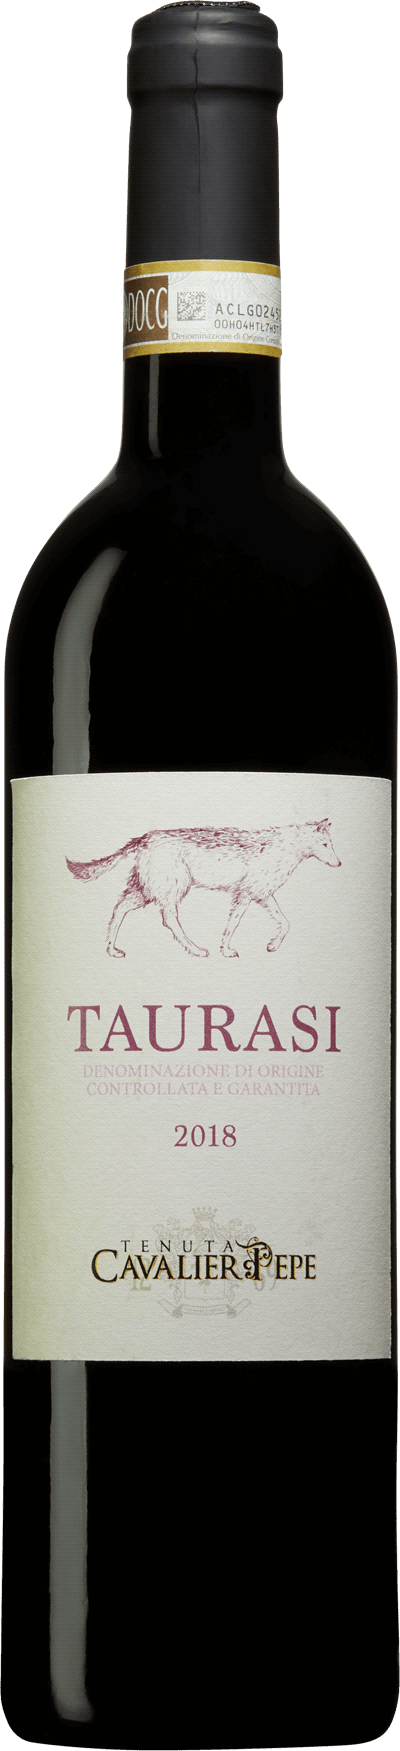 italiensk rødvin Taurasi 